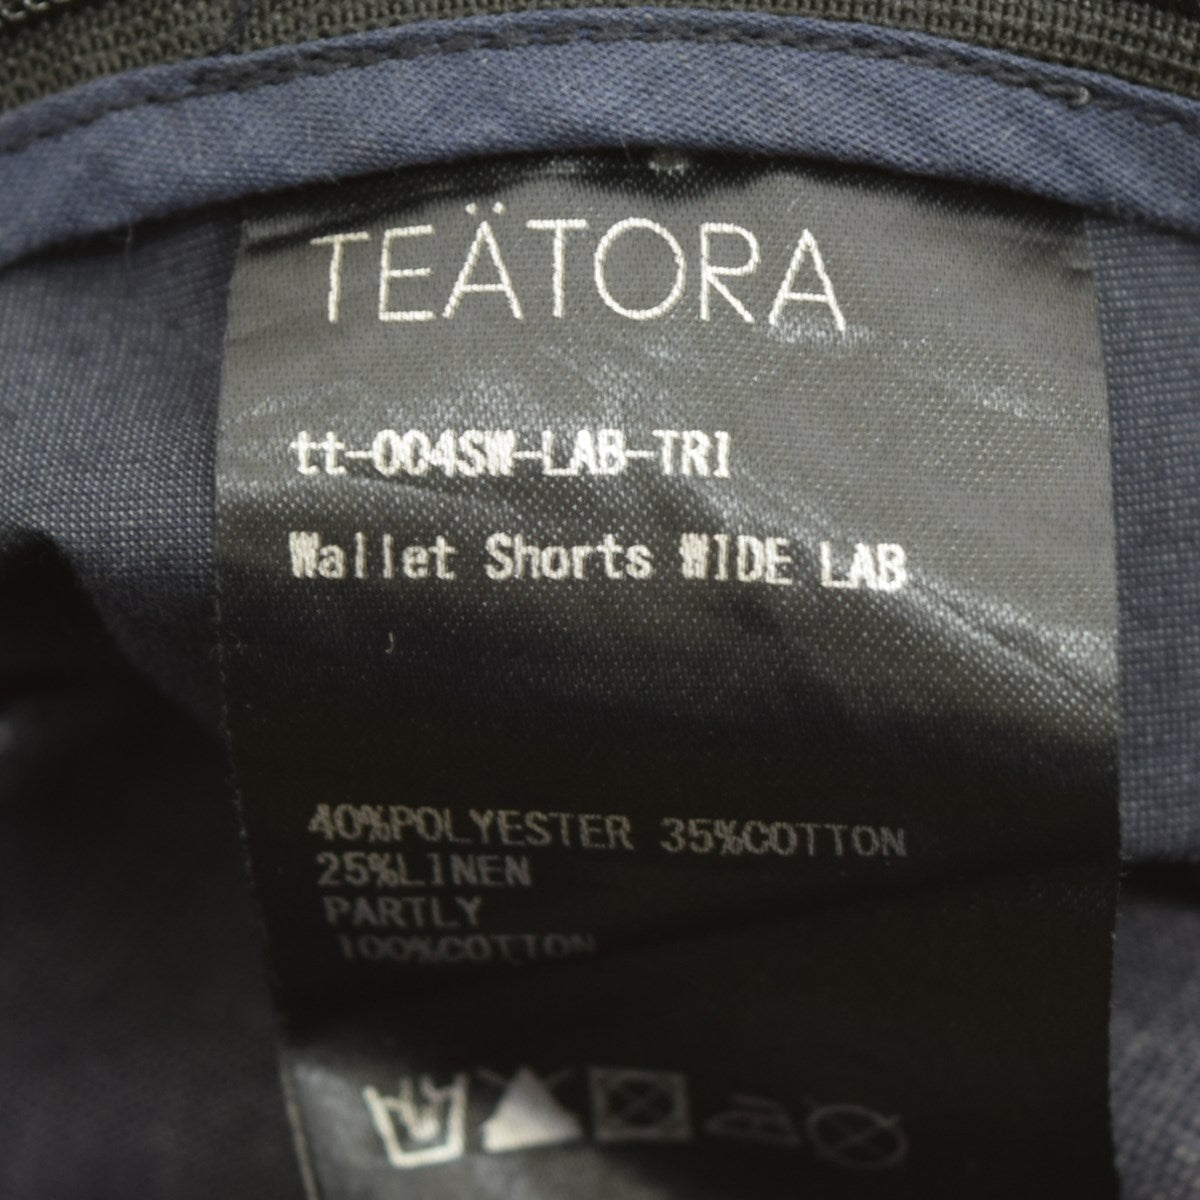 TEATORA(テアトラ) Wallet Shorts WIDE LABショートパンツ グレー サイズ L｜【公式】カインドオルオンライン  ブランド古着・中古通販【kindal】